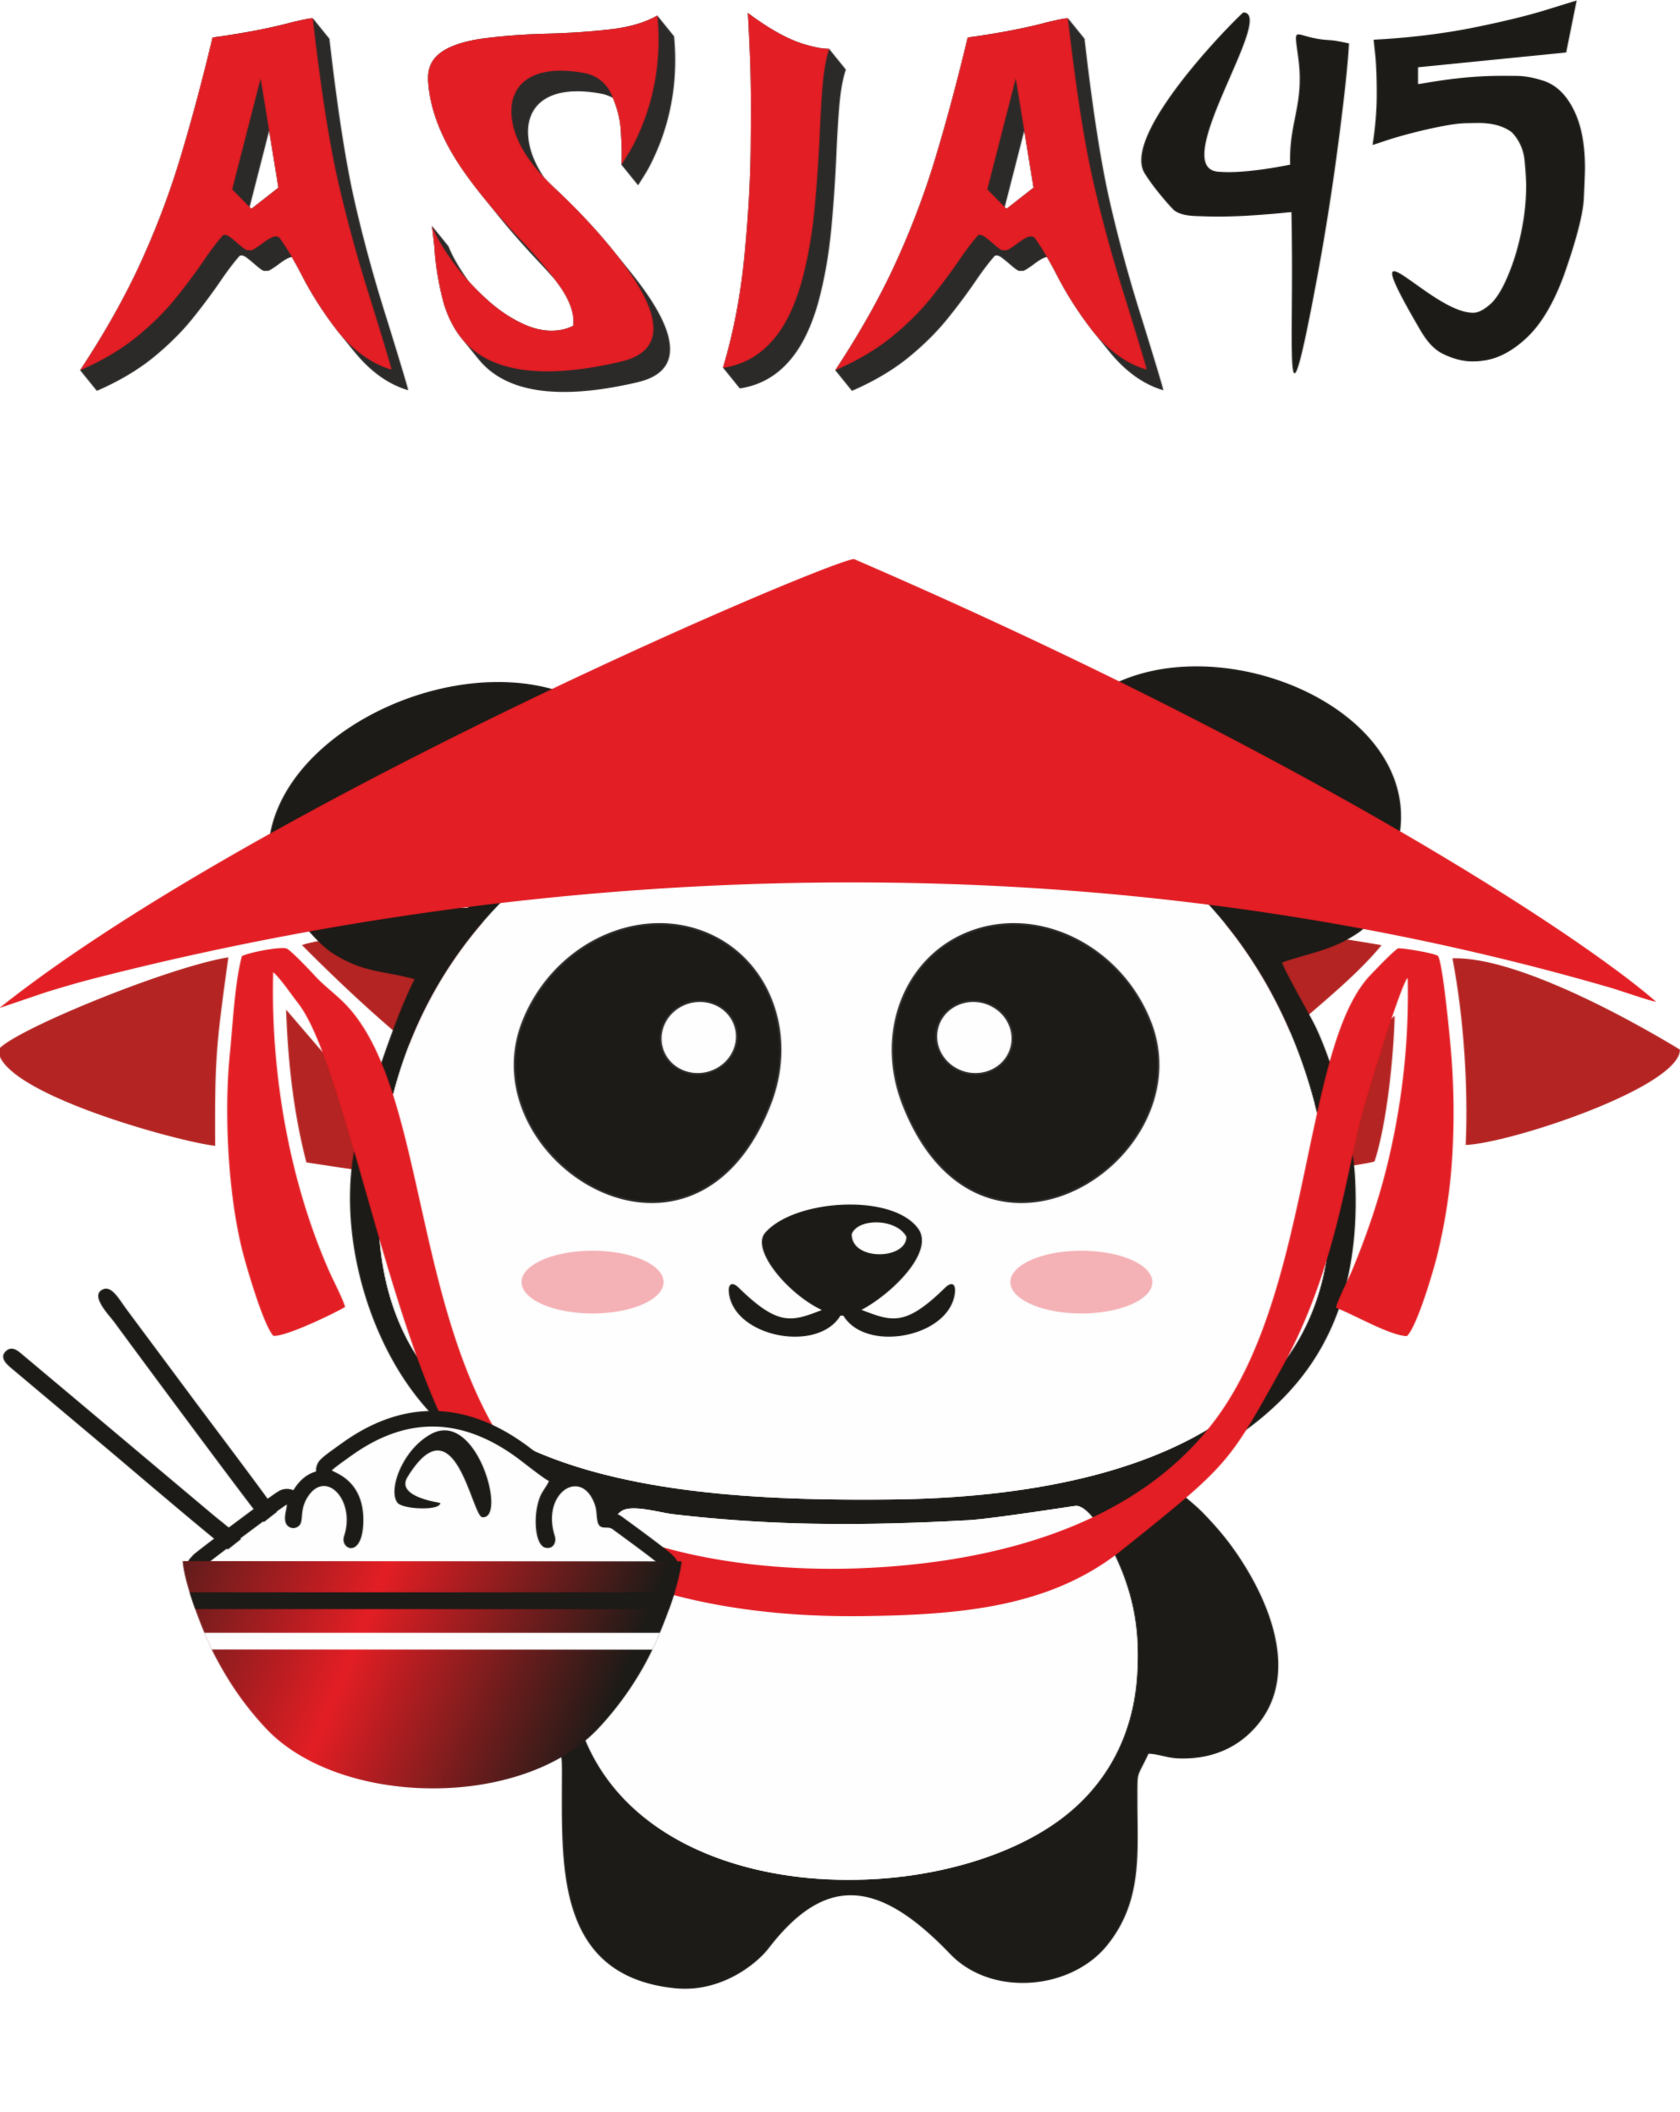 Логотип asia45